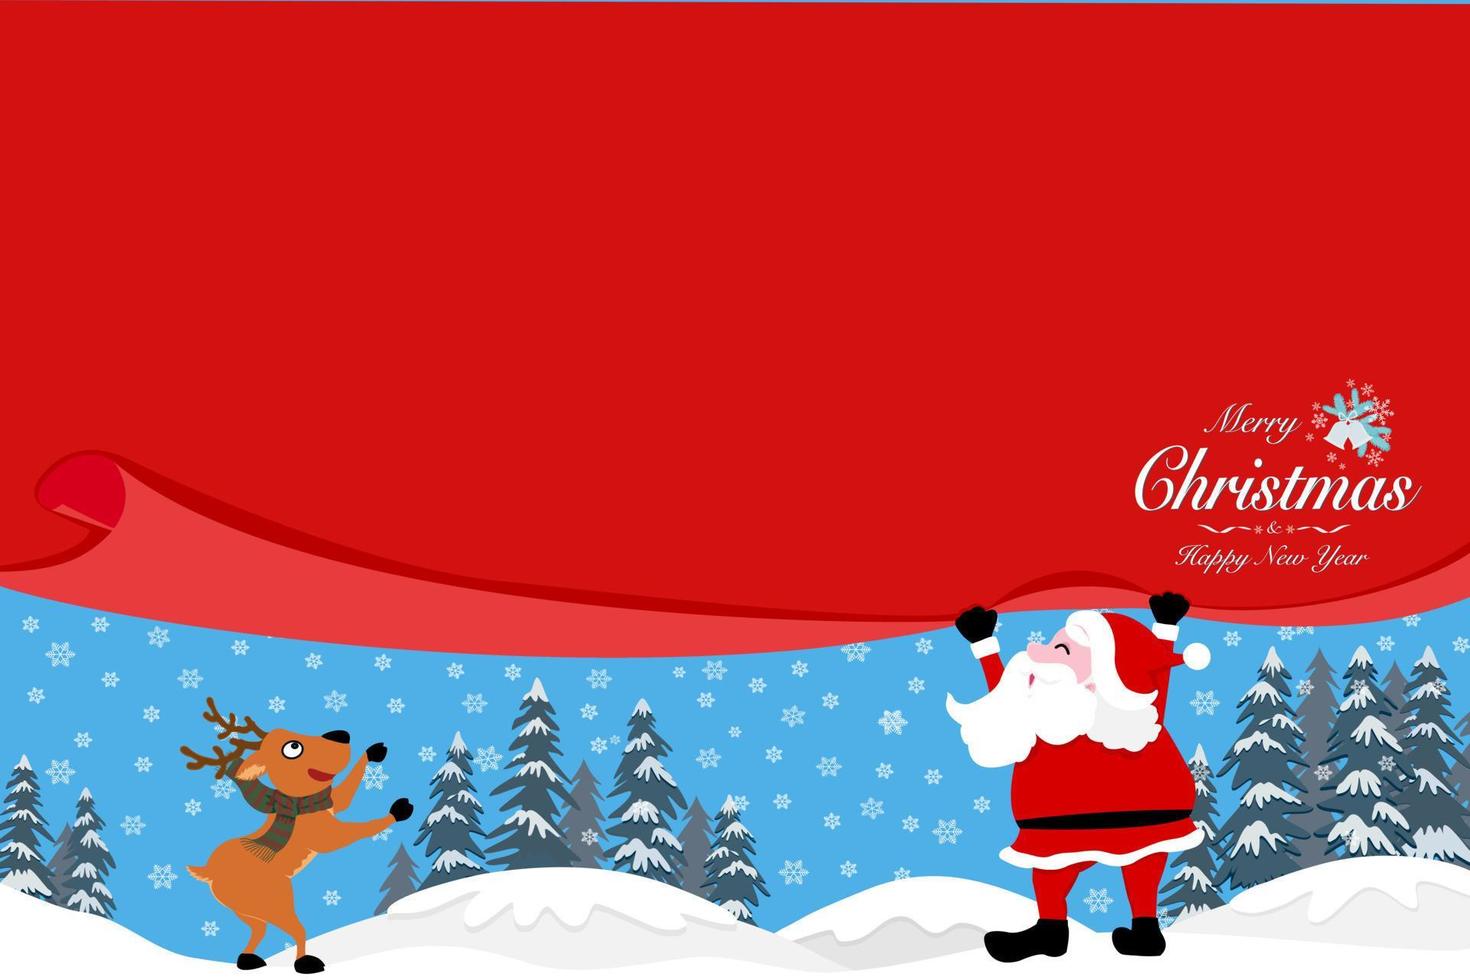 Santa clausola traino rosso tenda con copia spazio, testi allegro Natale e contento nuovo anno su angolo renna, pino alberi e i fiocchi di neve nel inverno paesaggio su sfondo, vettore disegno per vacanza